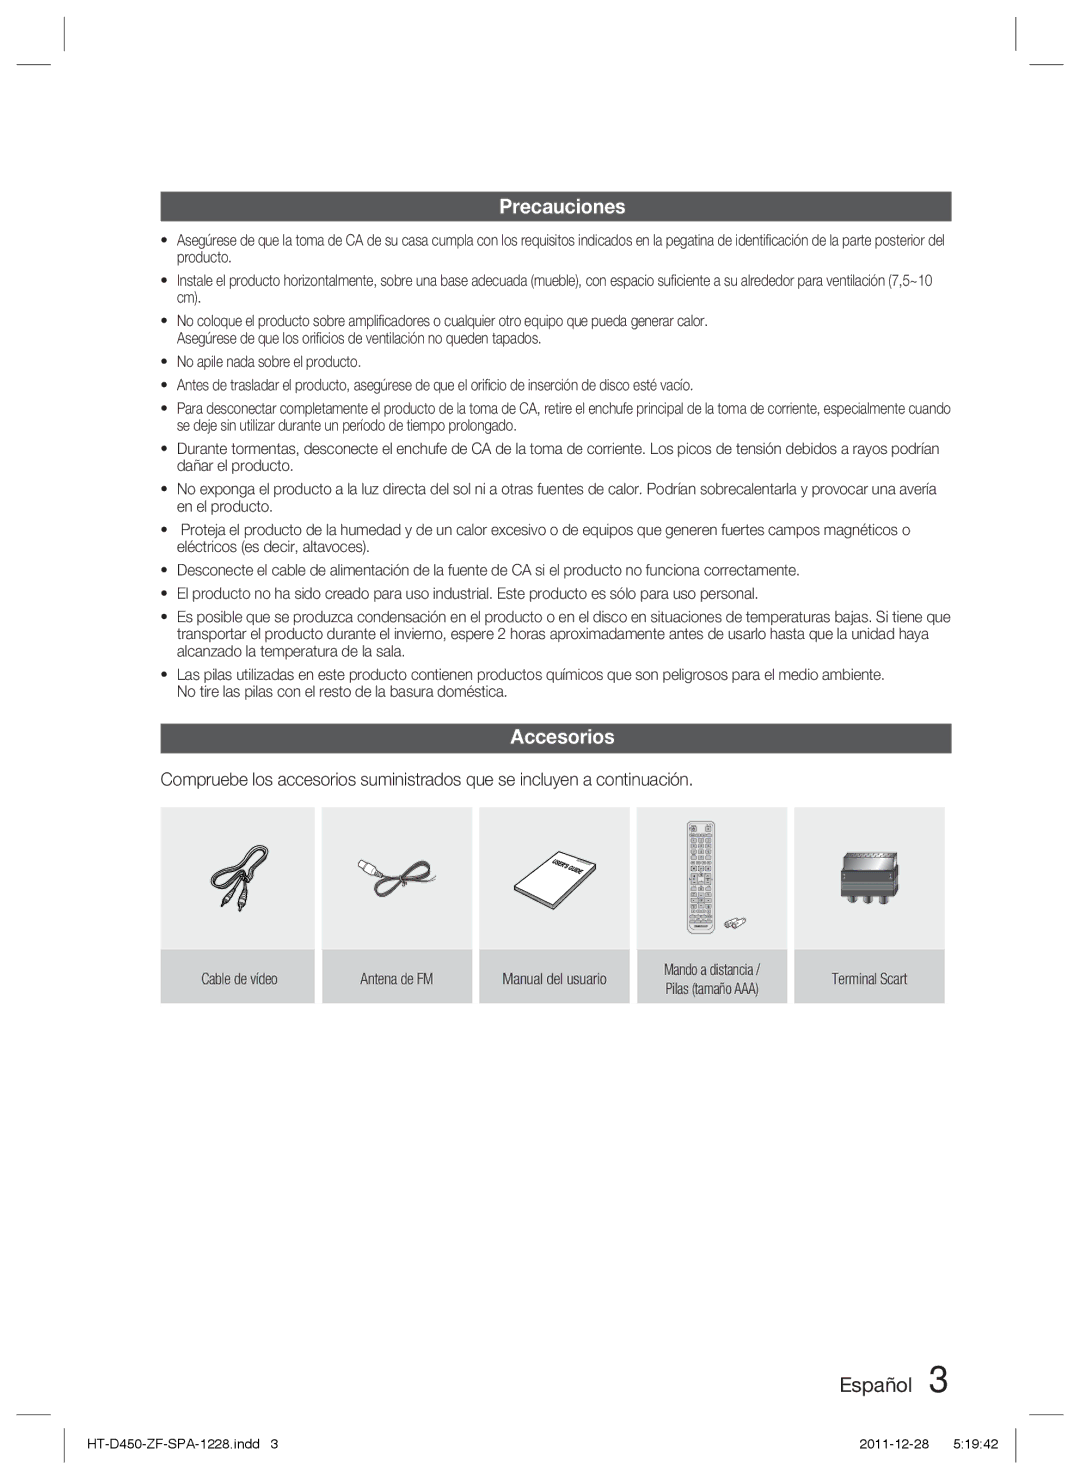 Samsung HT-D455/ZF manual Precauciones, Accesorios, Cable de vídeo Antena de FM Manual del usuario, Terminal Scart 